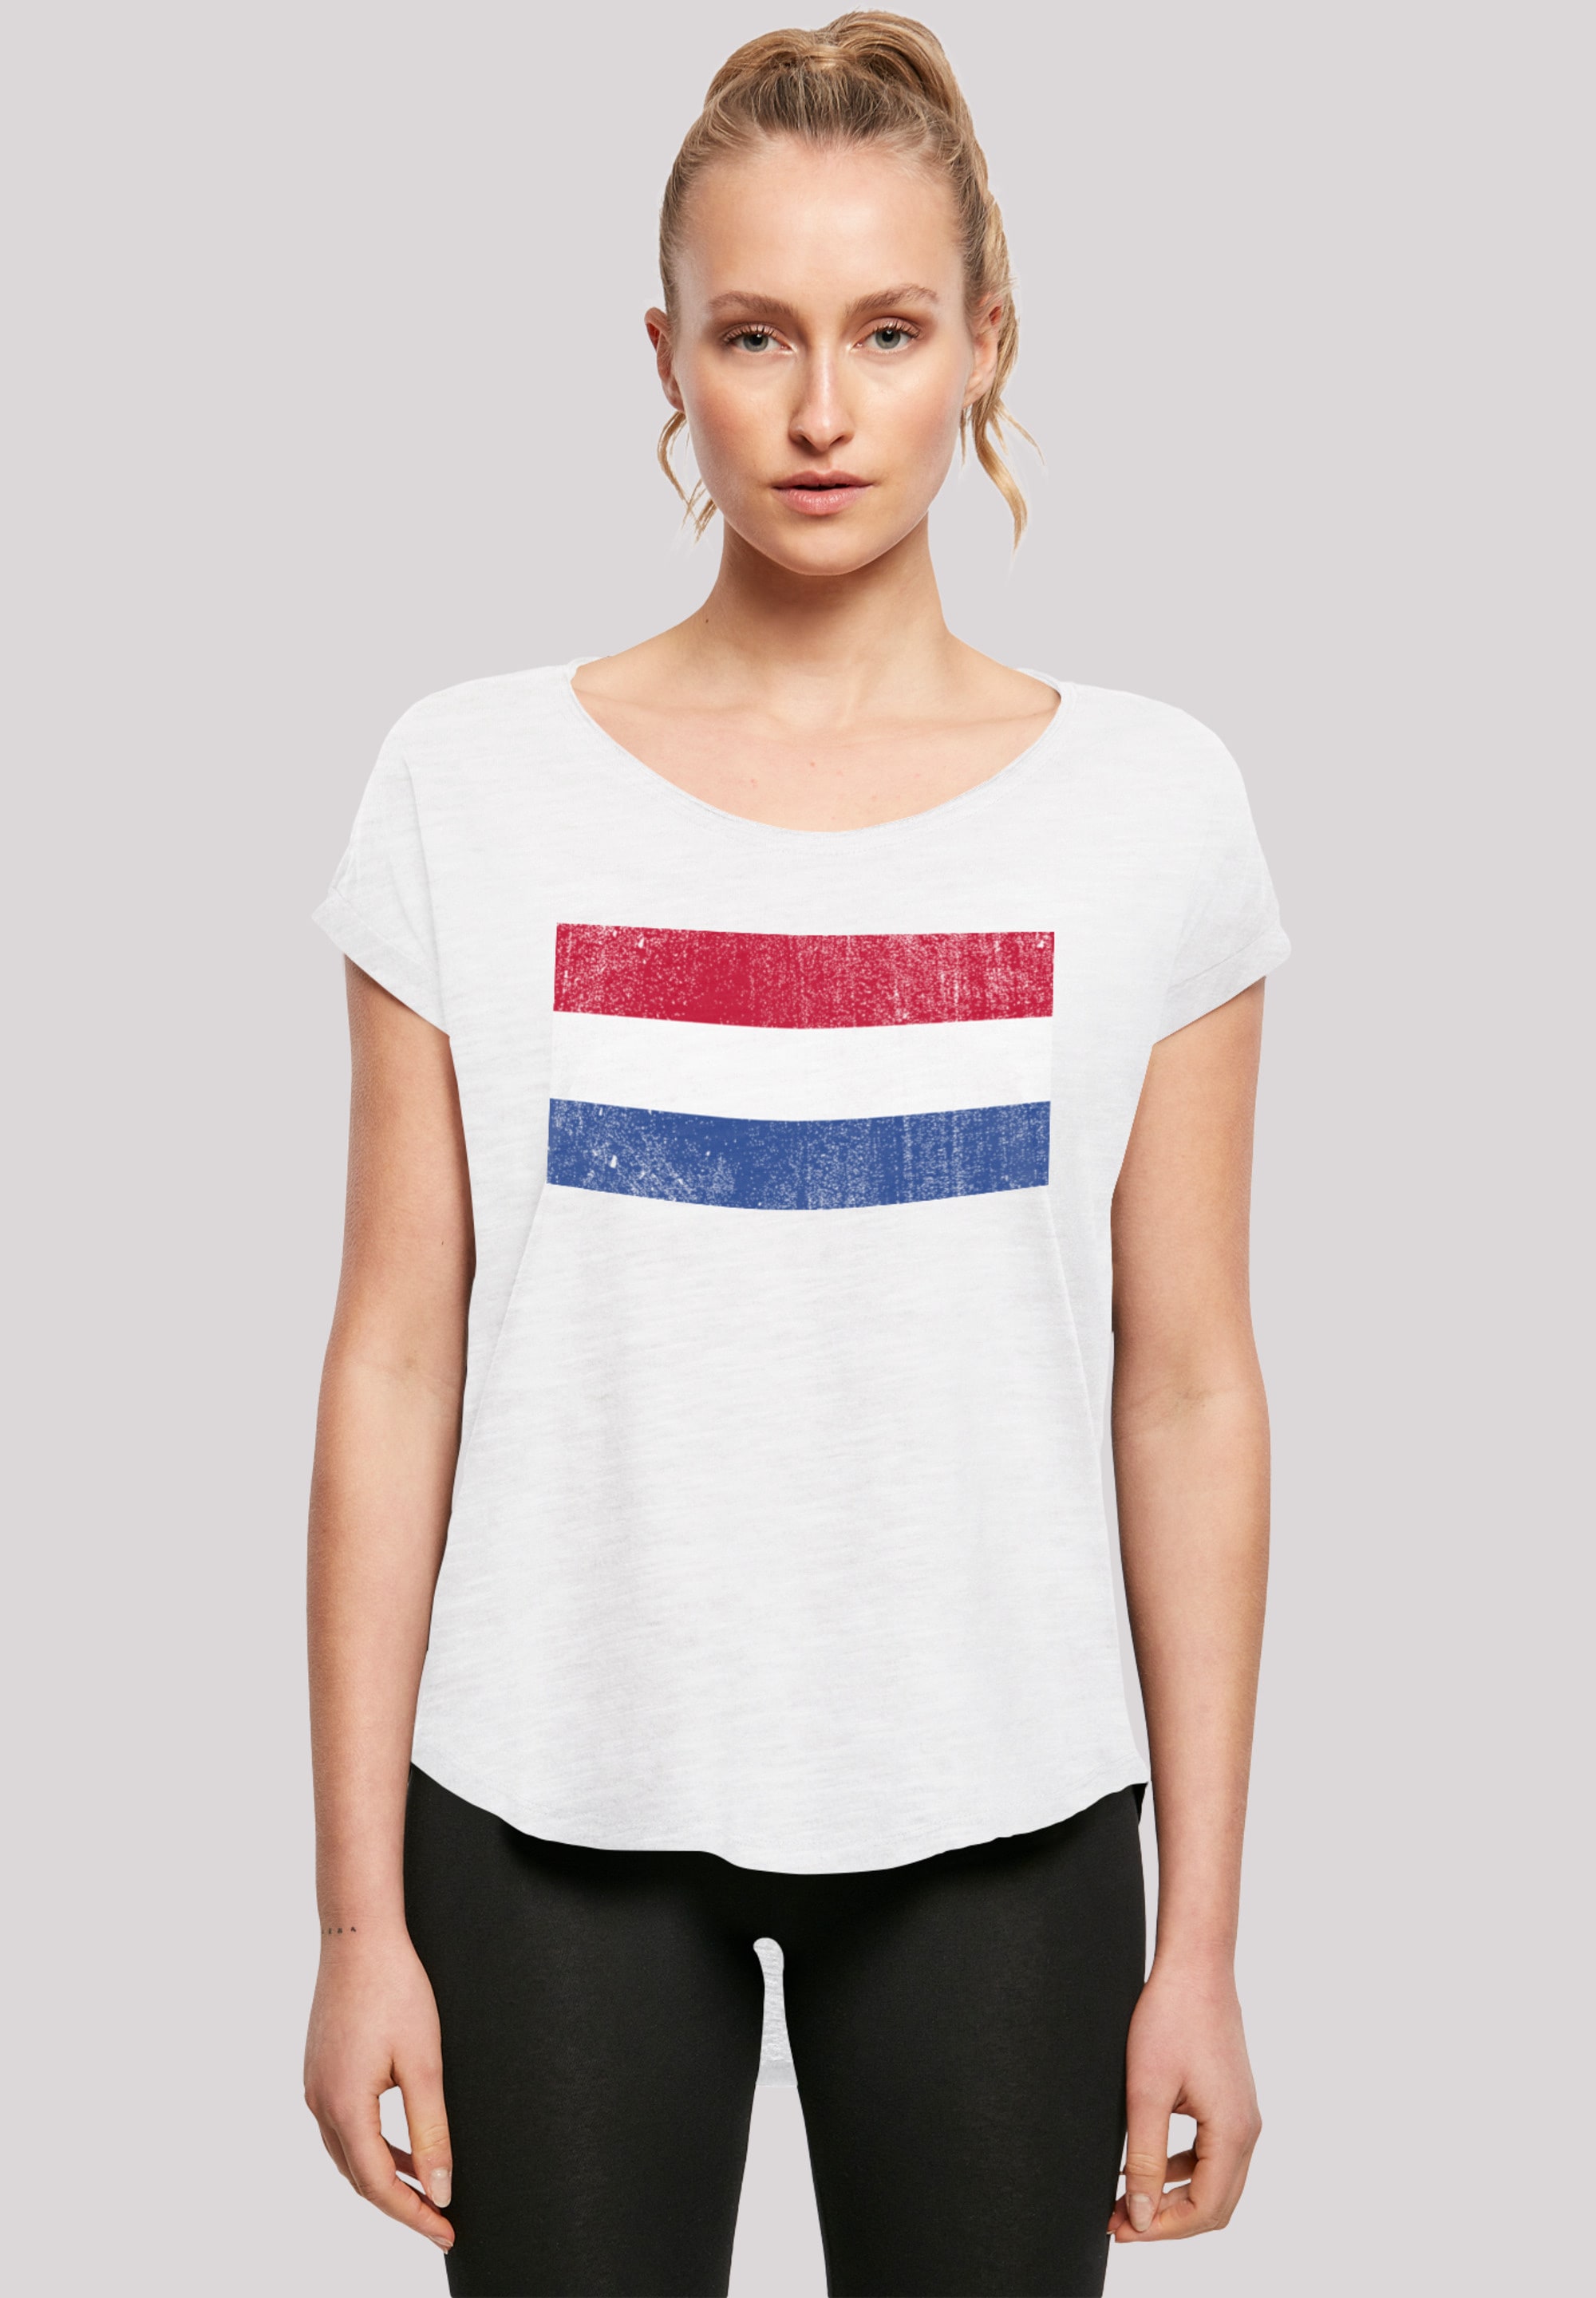 shoppen distressed«, Flagge F4NT4STIC T-Shirt Print Holland »Netherlands NIederlande